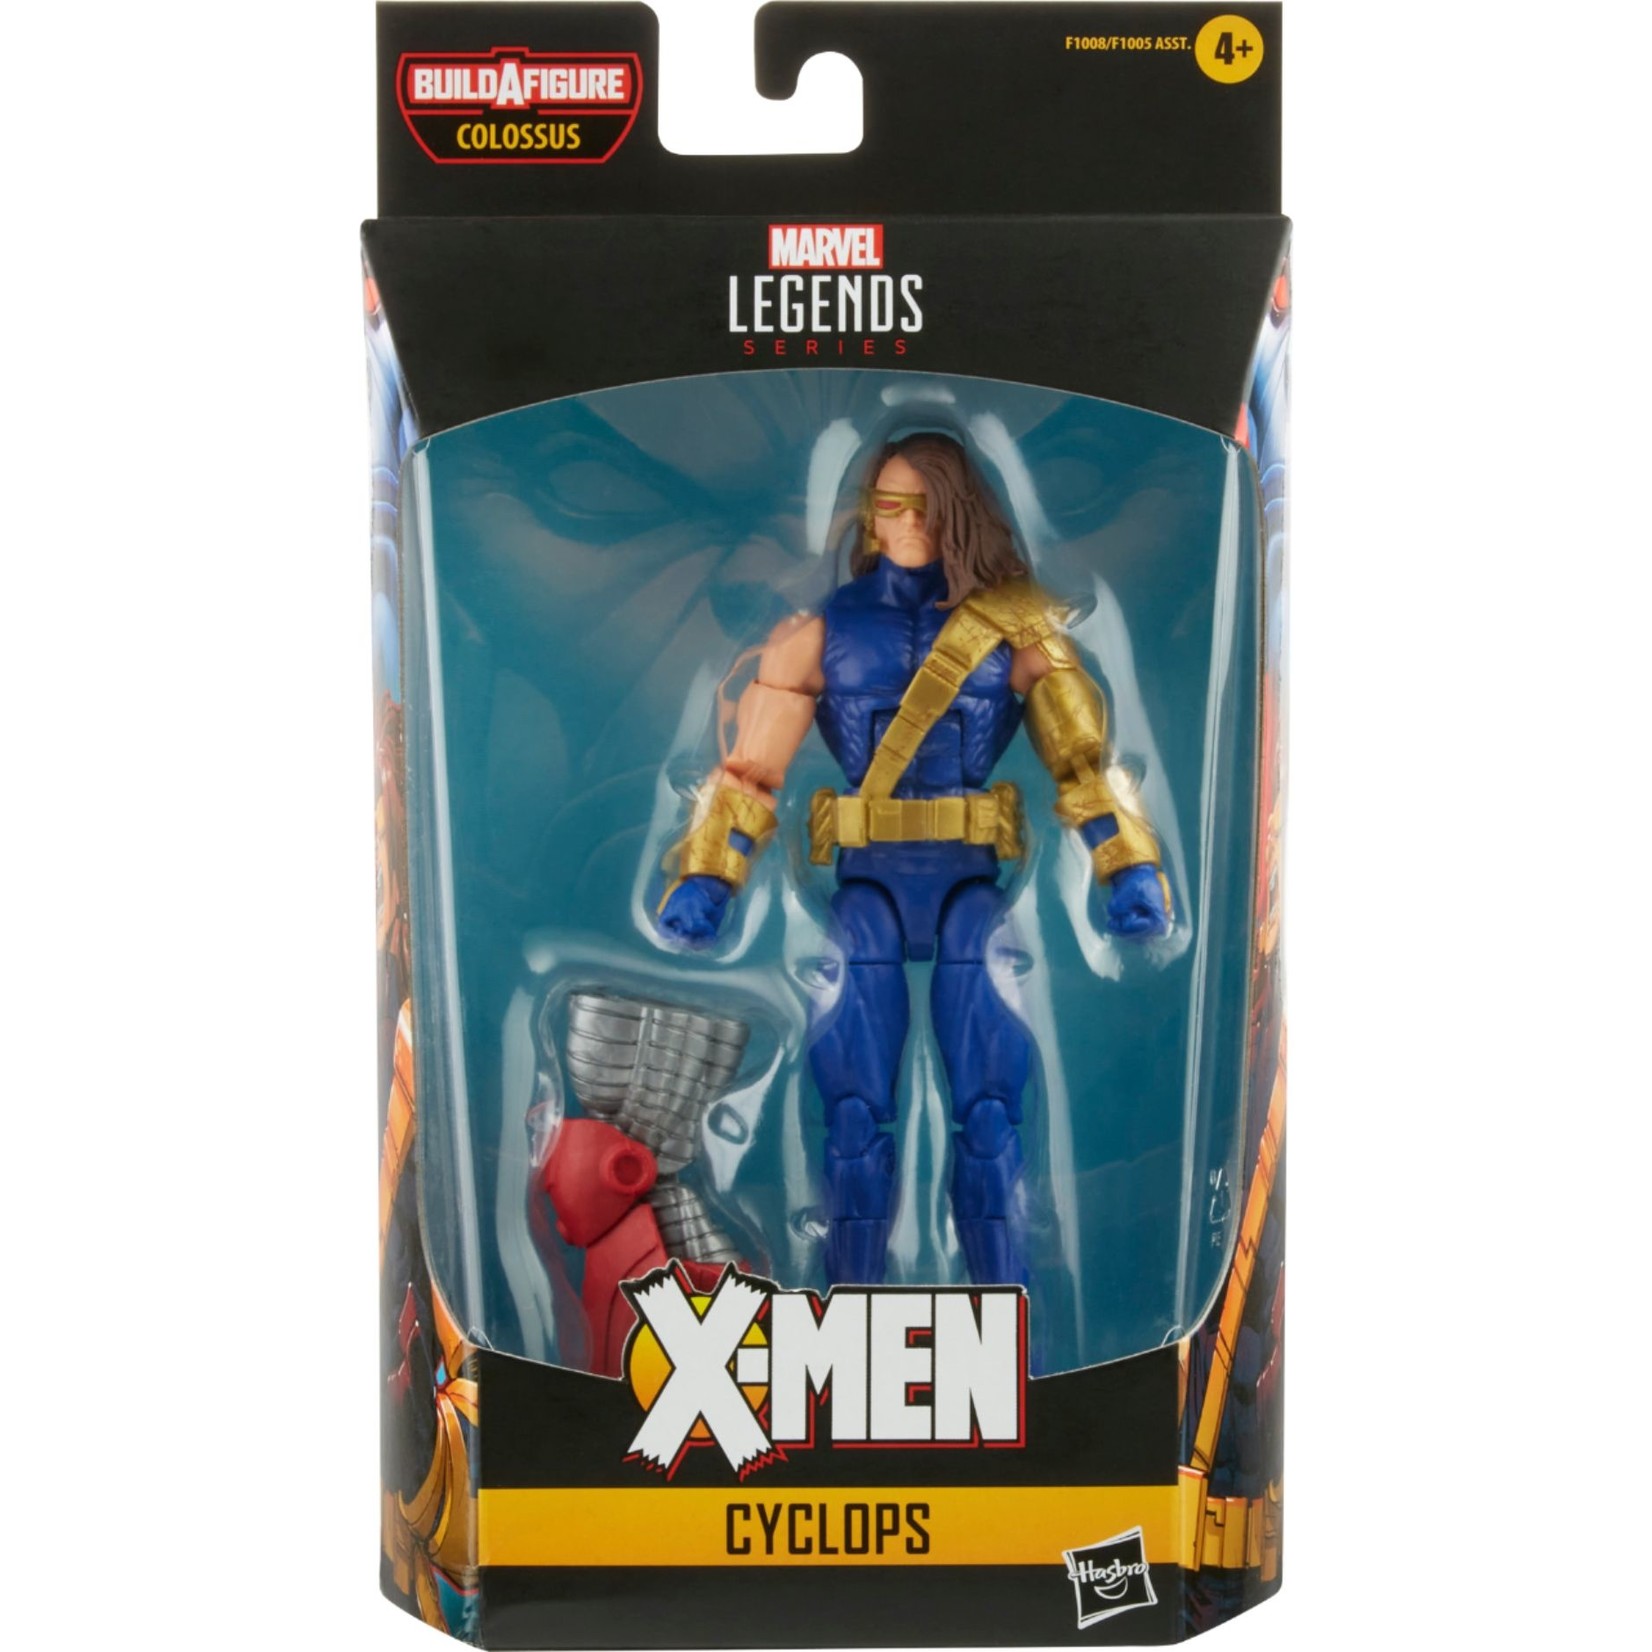 Marvel Legends Marvel Legends Series X-Men 6-inch Action Figure - Cyclops